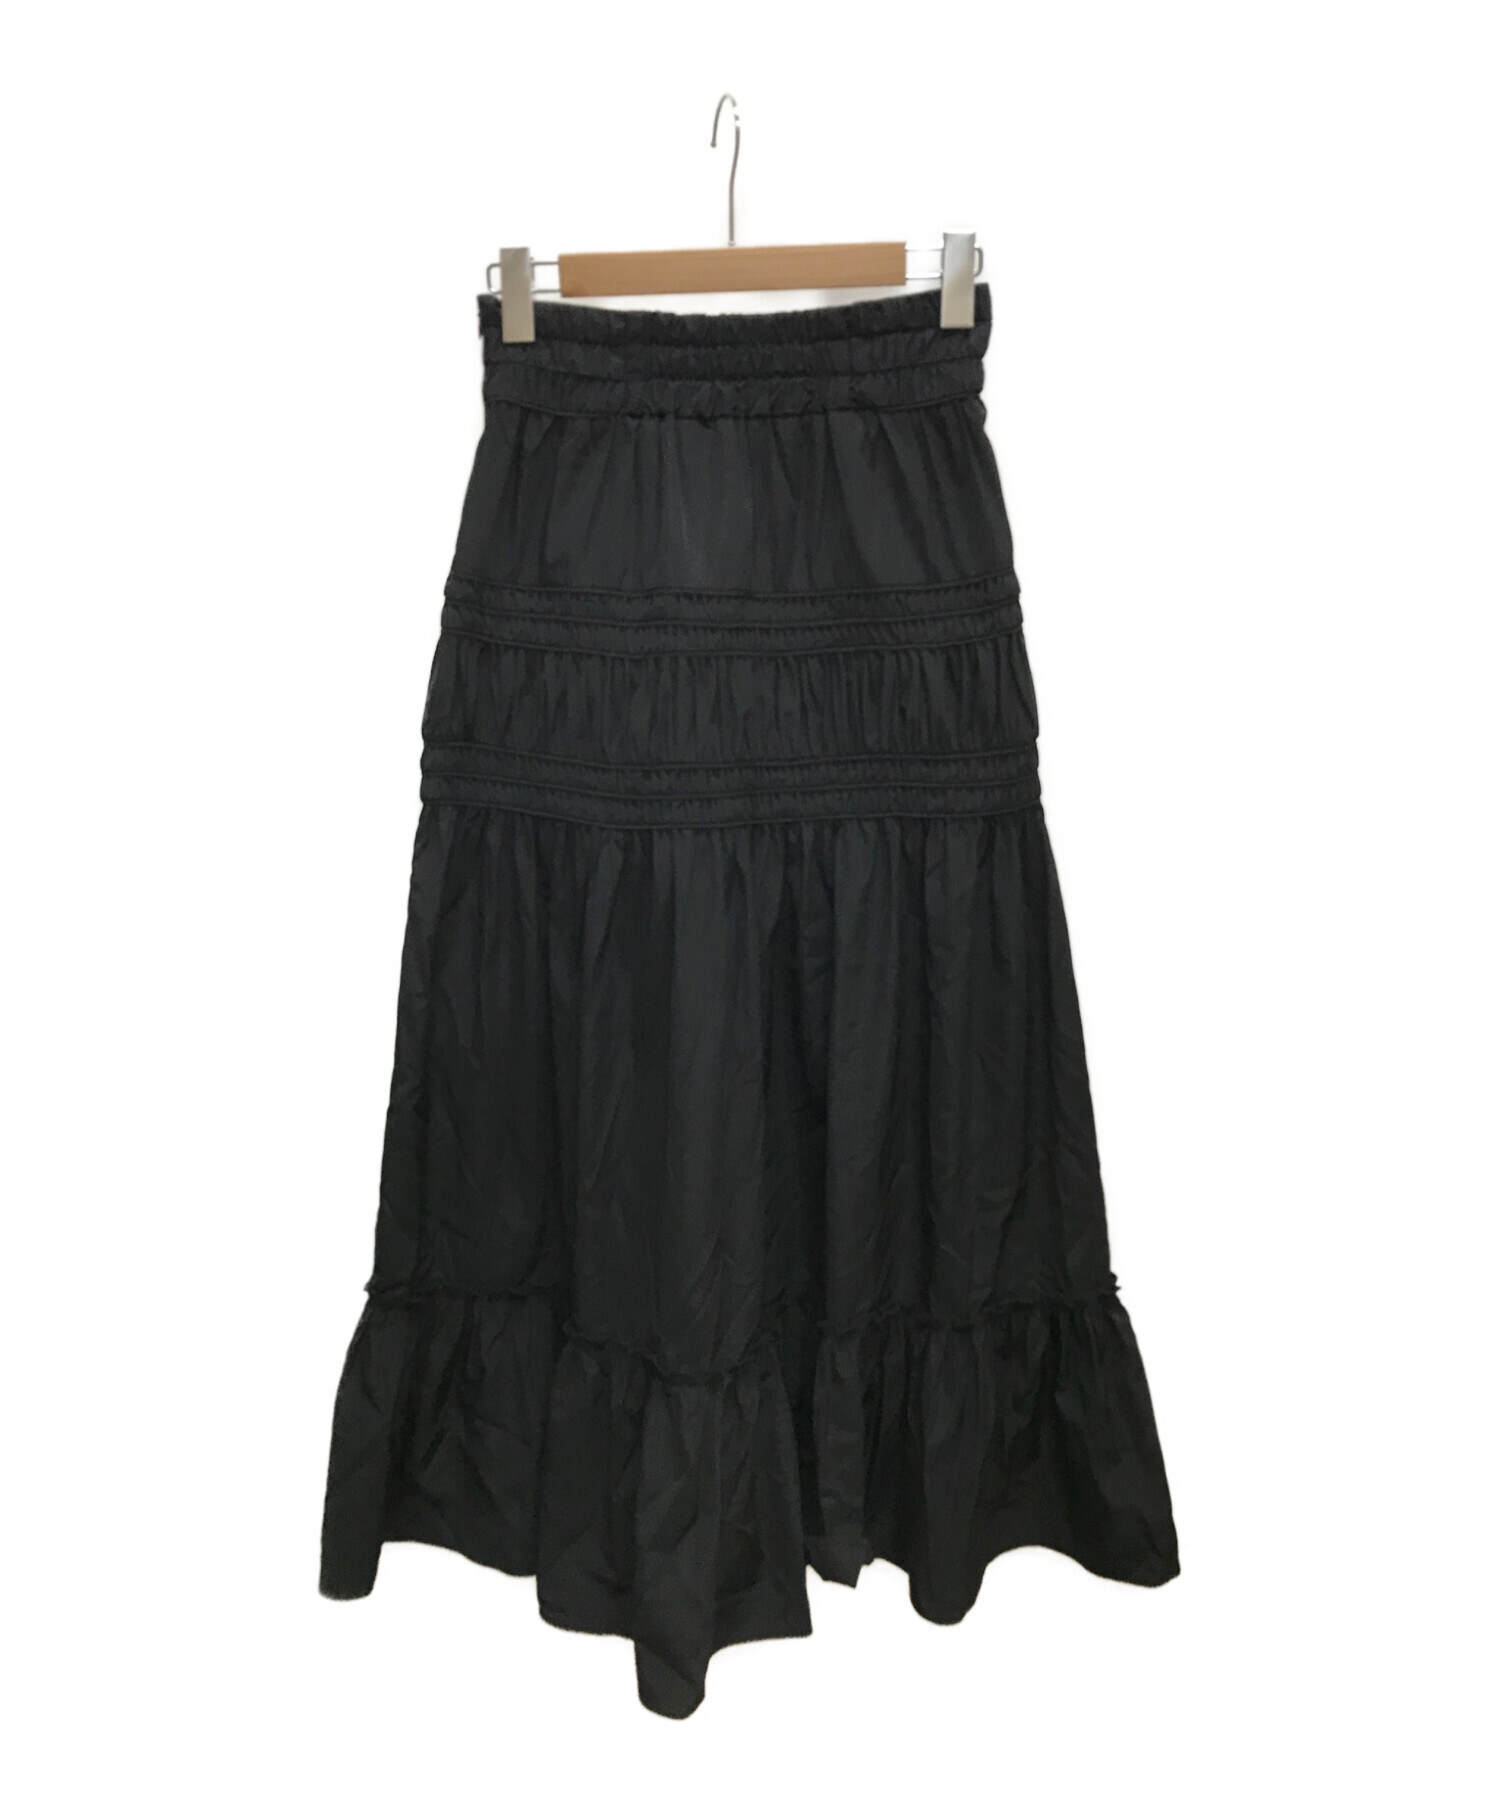 COEL (コエル) タフタコードパイピングスカート ブラック サイズ:38